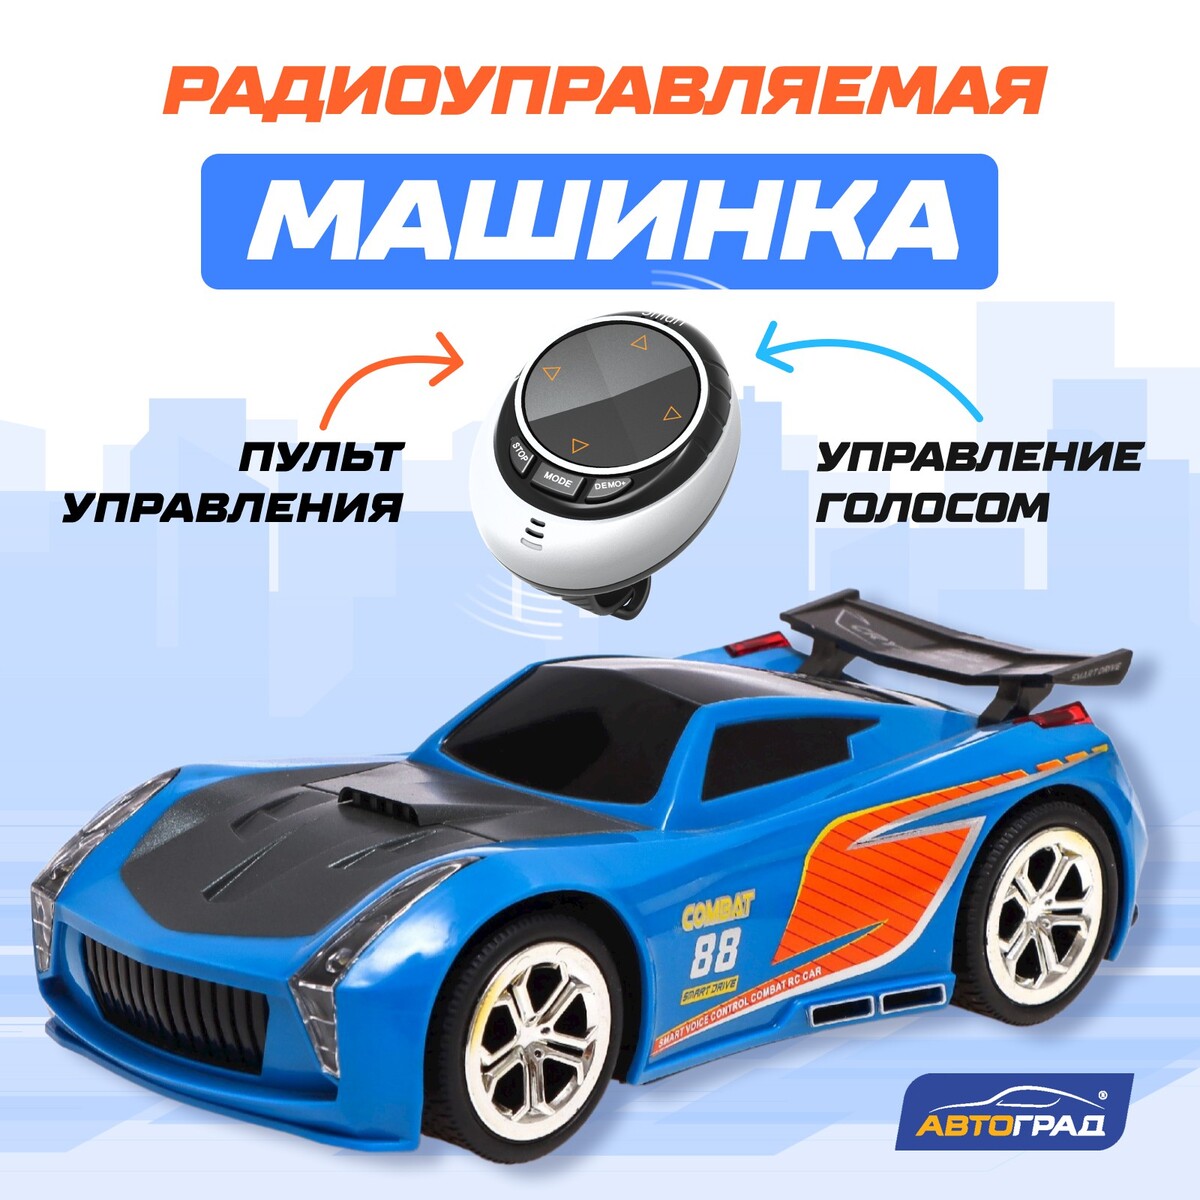 Машина радиоуправляемая voice, голосовое управление, русский язык, цвет синий машина радиоуправляемая купе в комплекте педали и руль работает от батареек синий